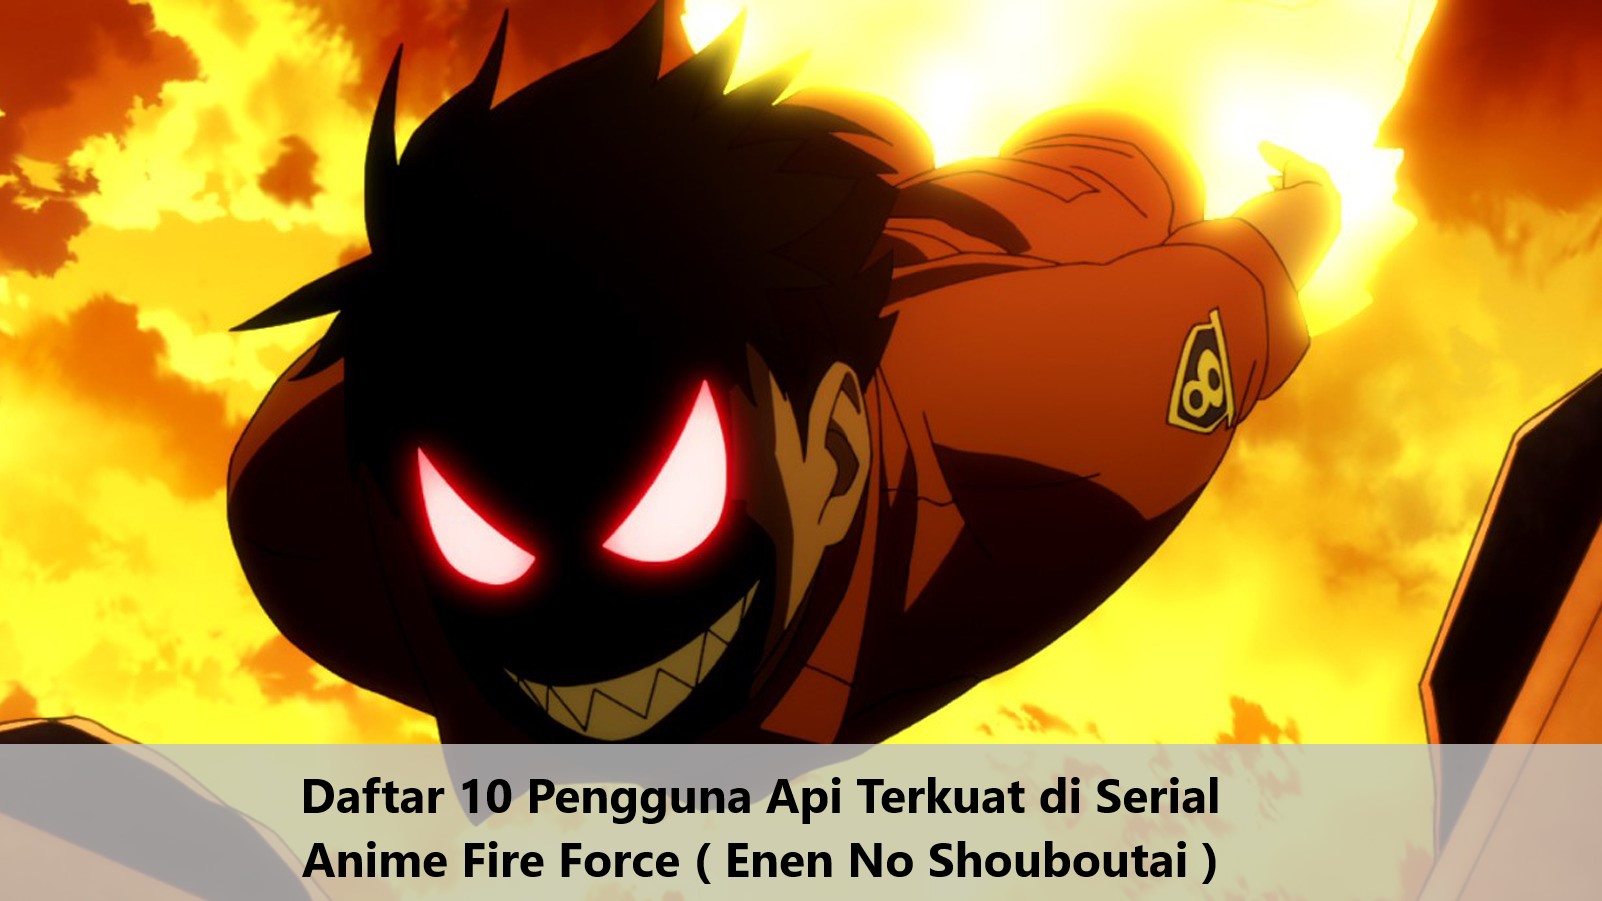 Daftar 10 Pengguna Api Terkuat di Serial Anime Fire Force ( Enen No Shouboutai )s